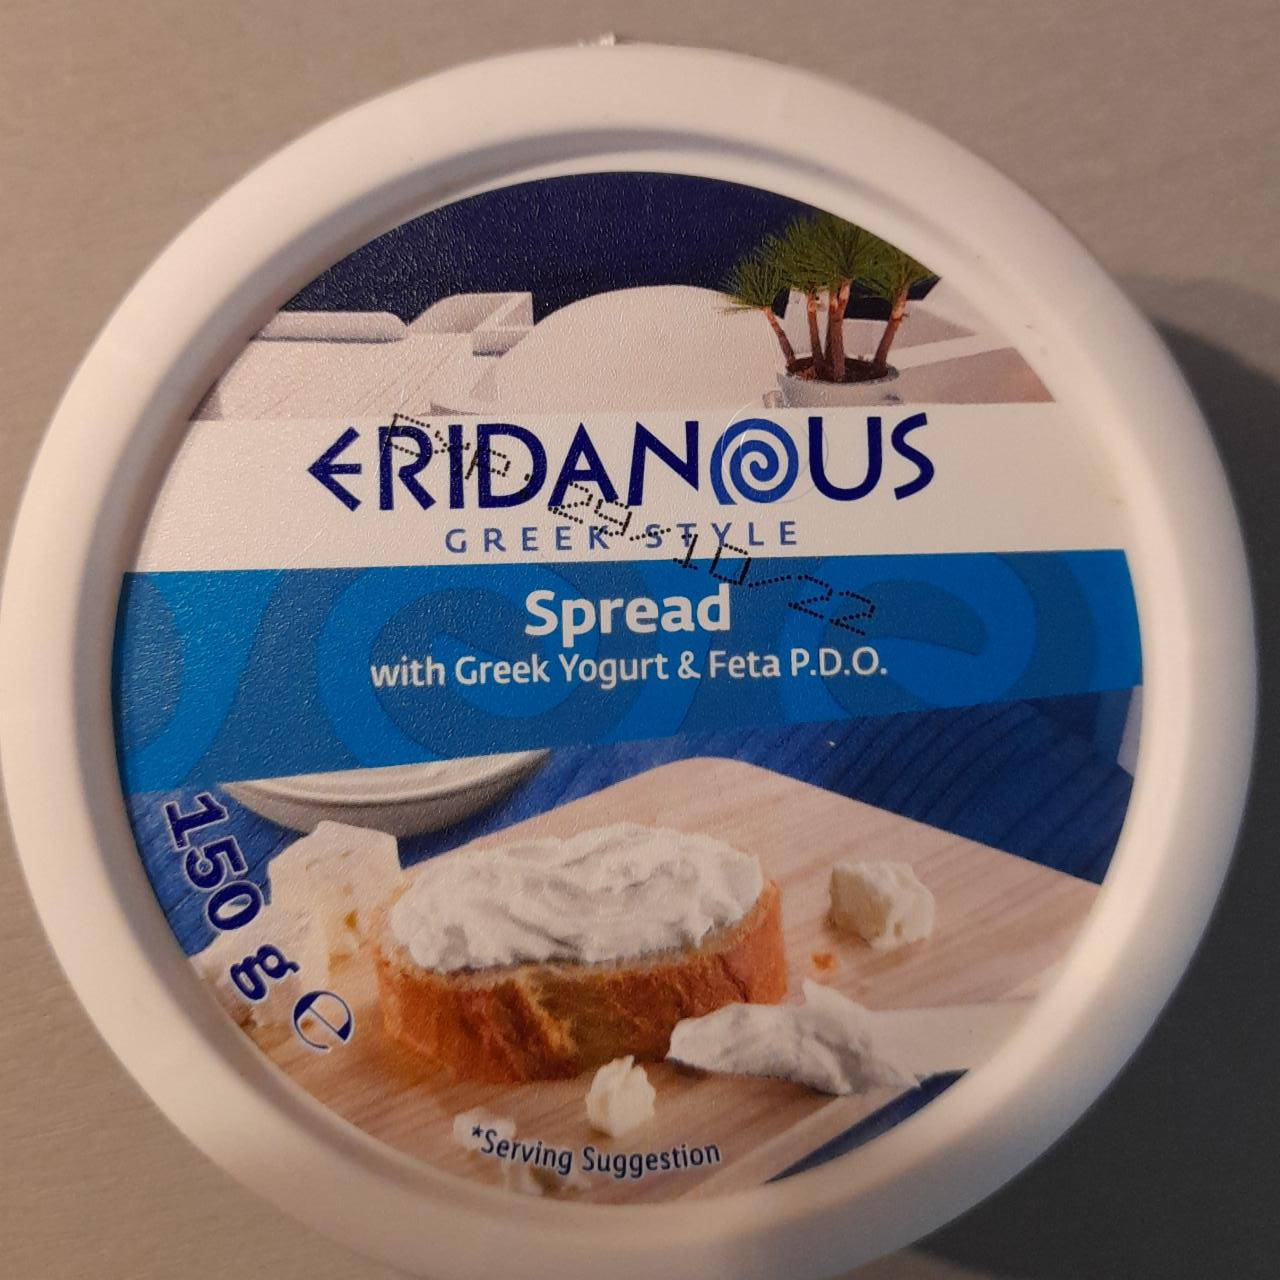 Zdjęcia - Spread with greek yogurt & feta Eridanous